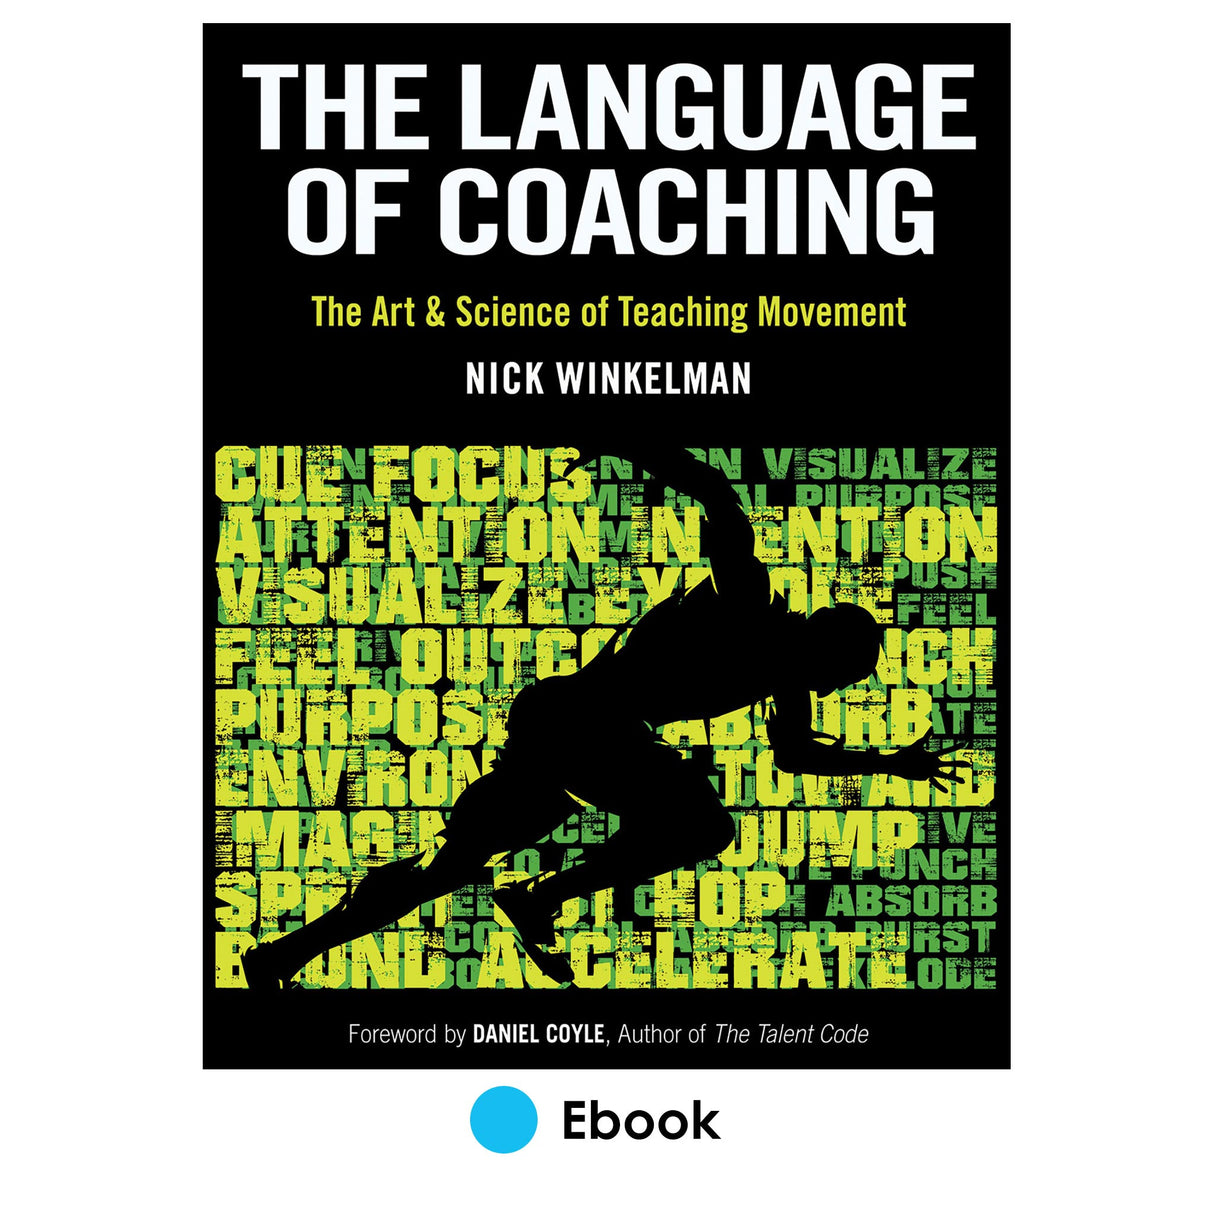 Language of Coaching epub, The